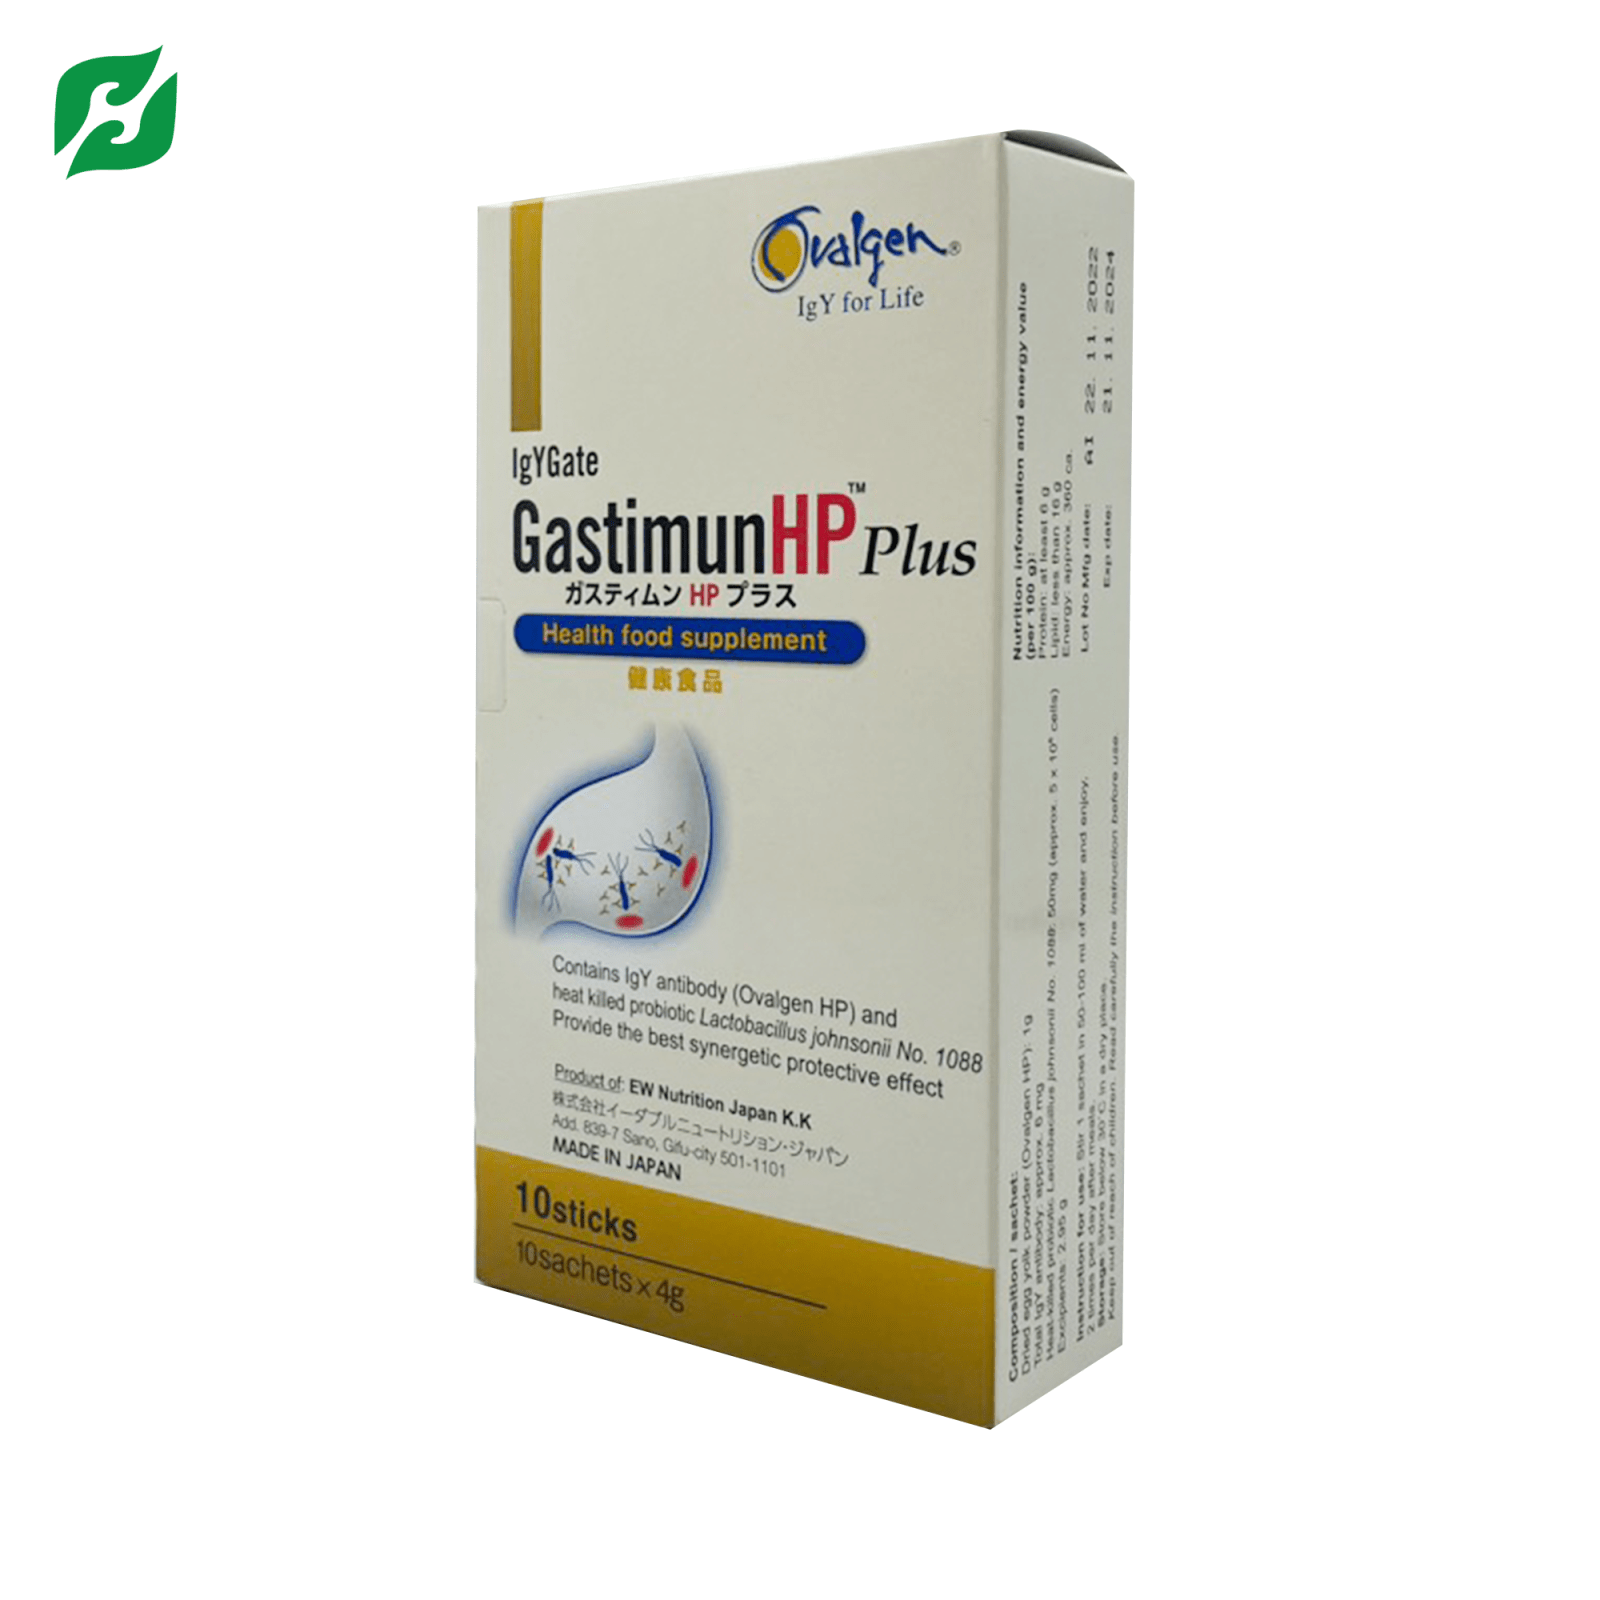 GastimunHP Plus – Bột hỗ trợ sức khoẻ dạ dày và hệ tiêu hoá